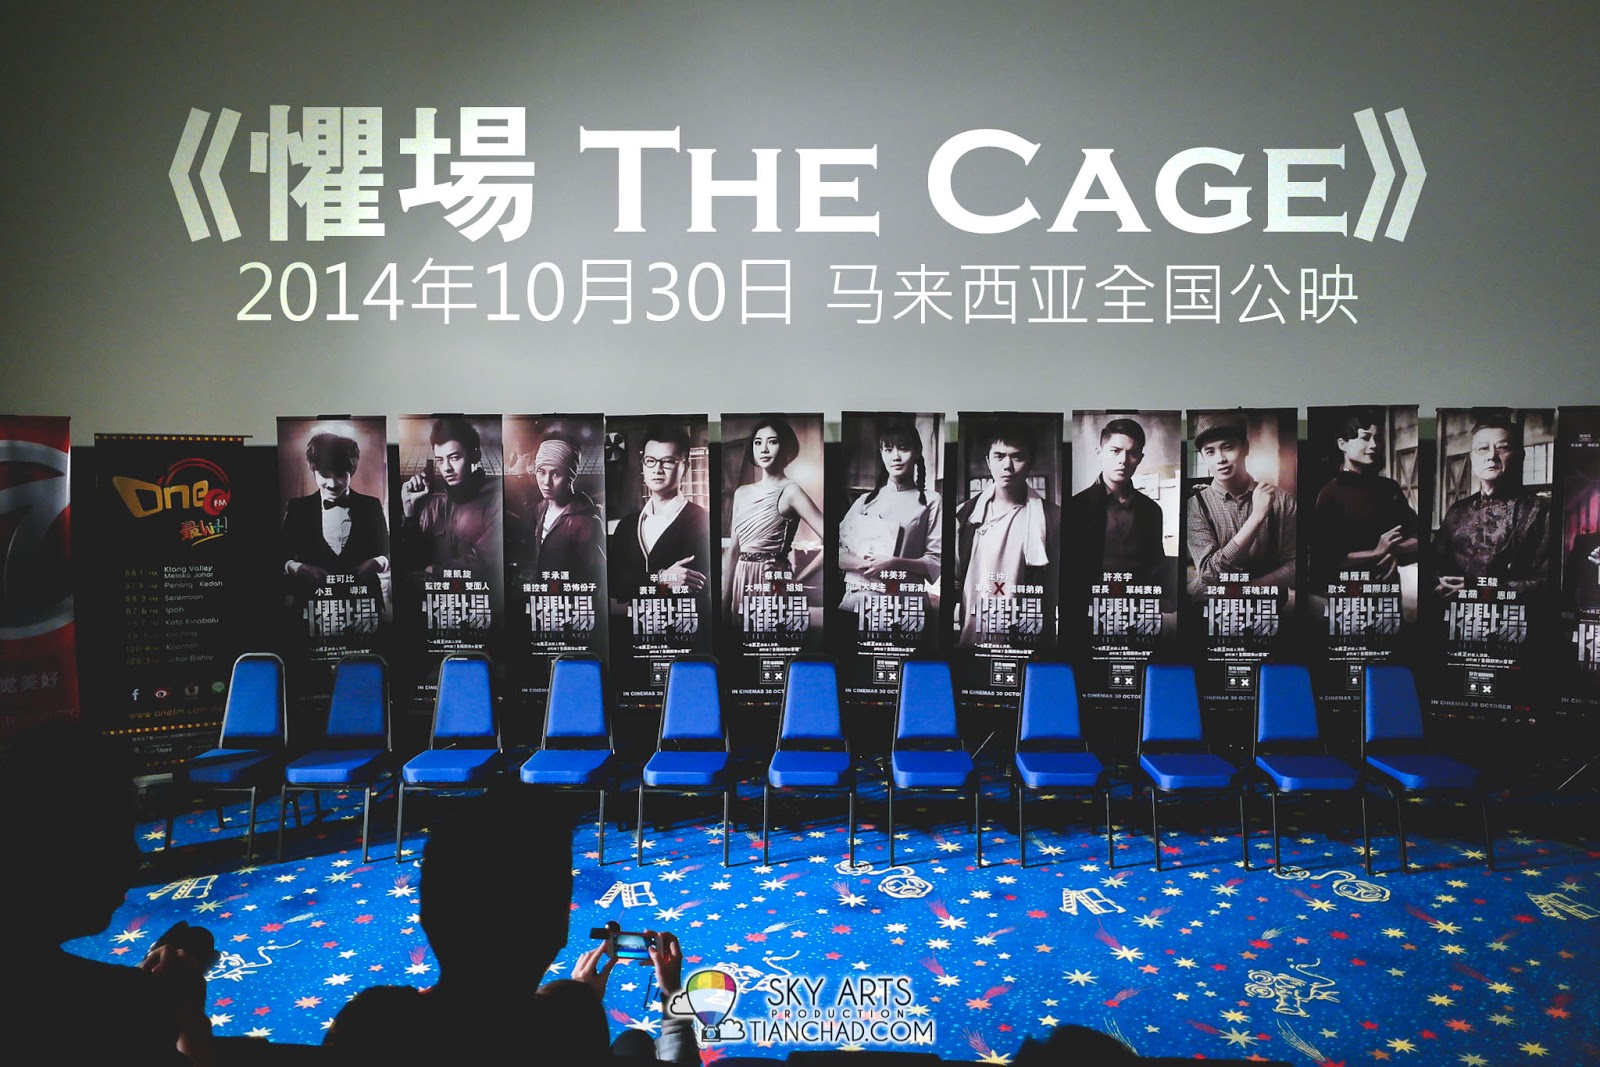 懼場 The Cage - 2014年10月30日 马来西亚全国公映